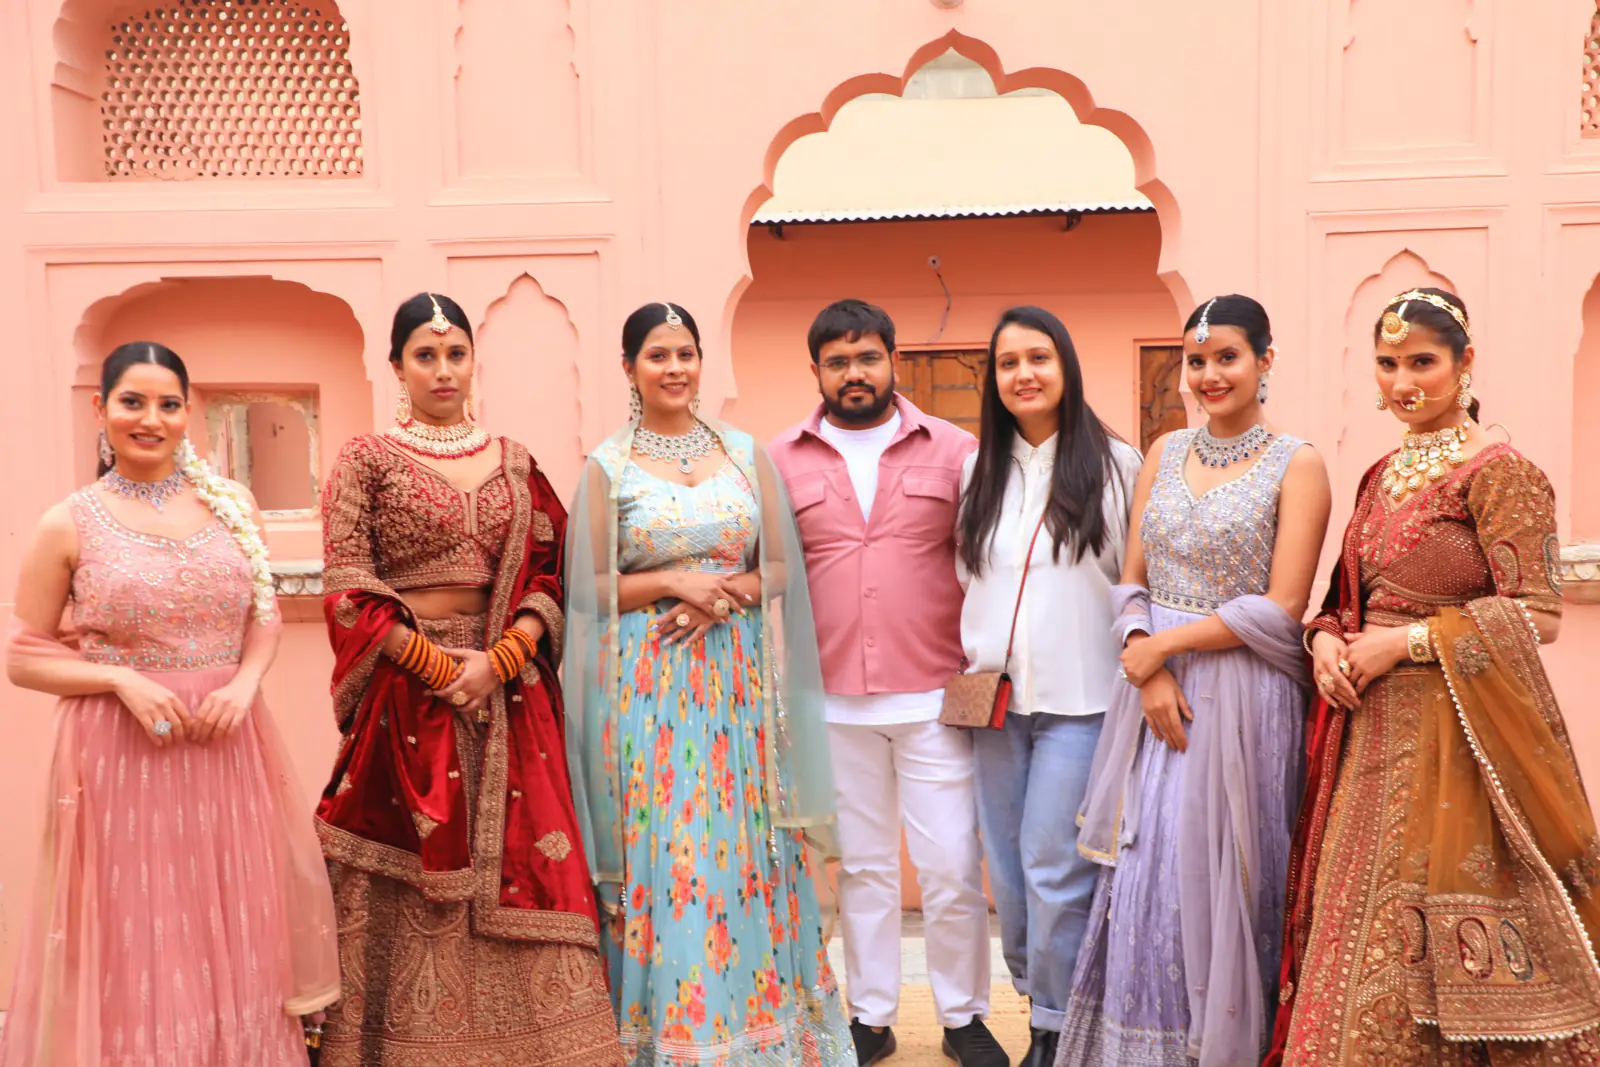 जयपुर में 'नूर' फोटोशूट में दिखा रिच क्लास हैवी जूलरी और डिज़ाइनर आउटफिट्स का मिक्स कॉम्बिनेशन